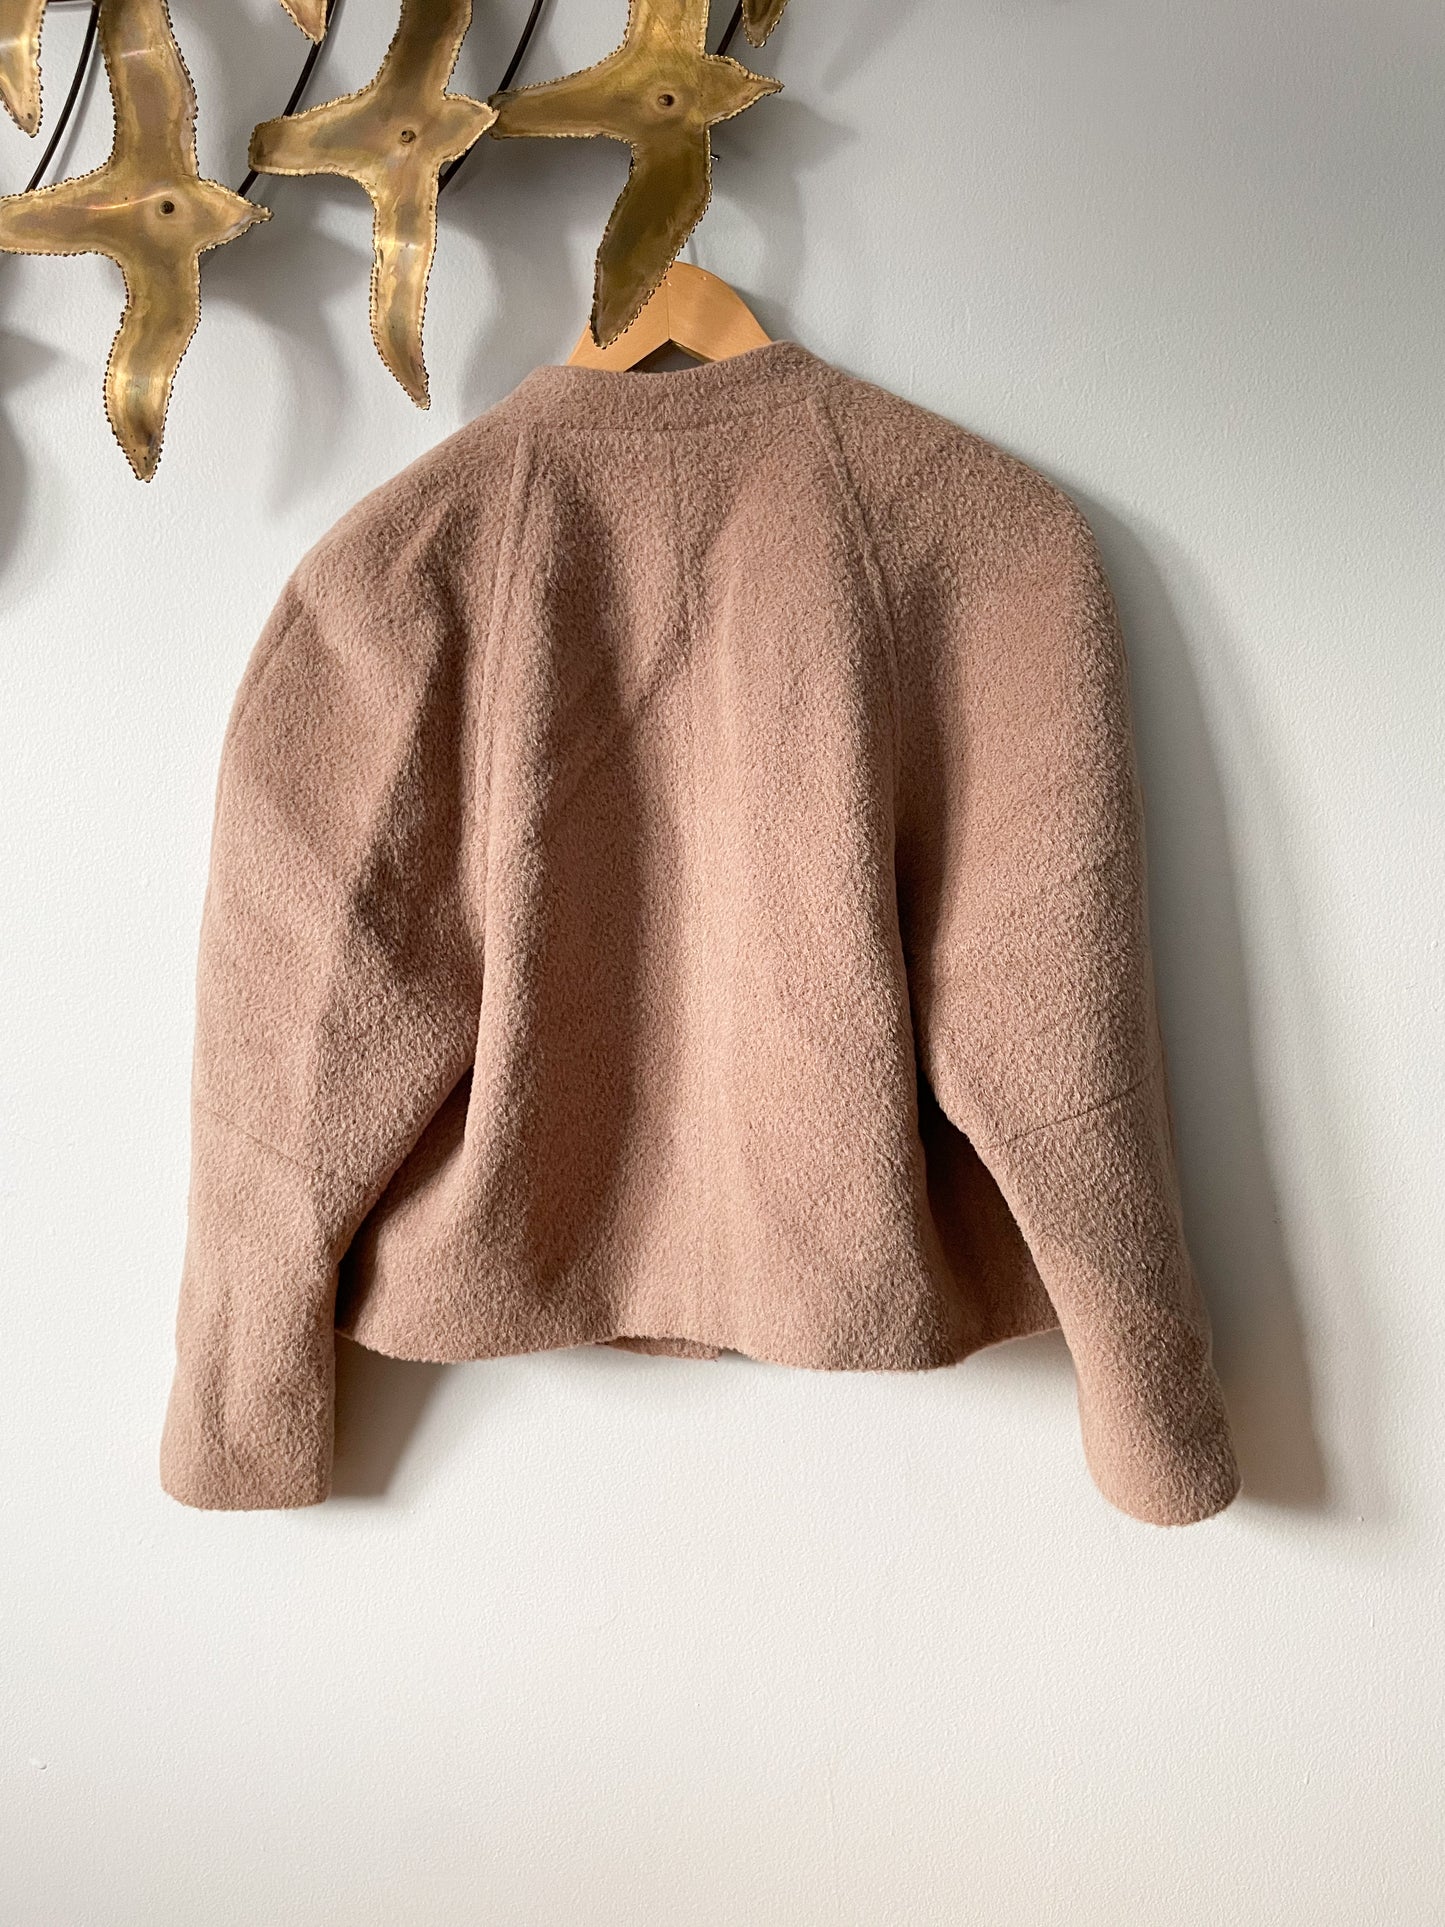 Judith & Charles Taupe Wool Alpaca Raglan Sleeve Cropped Jacket - S/M